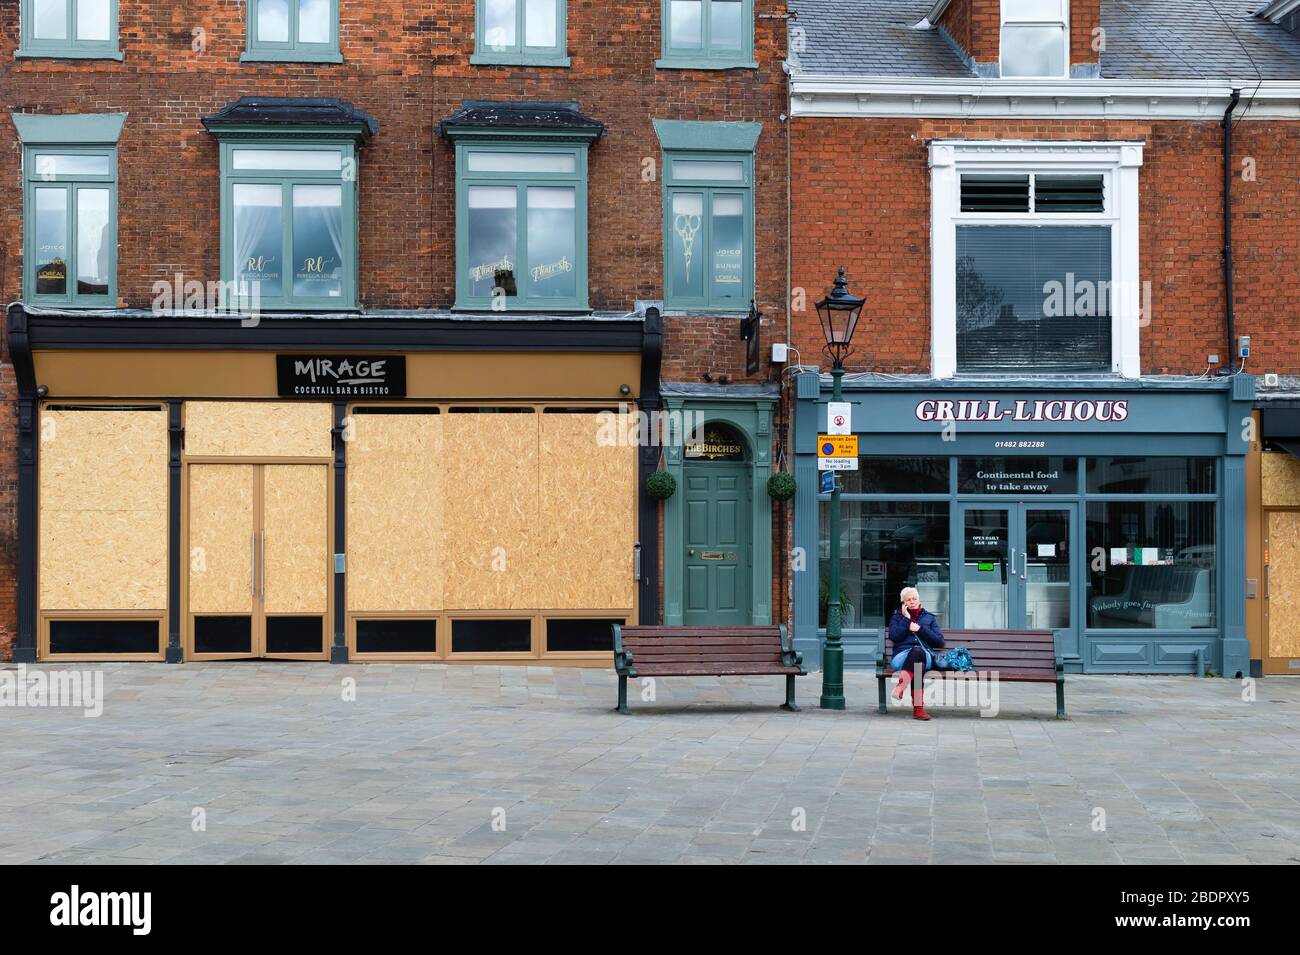 Donna solitaria seduta su banco affiancata da negozi e imprese chiusi dopo decreto governativo a seguito dell'epidemia di Corona virus nello Yorkshire, Regno Unito. Foto Stock